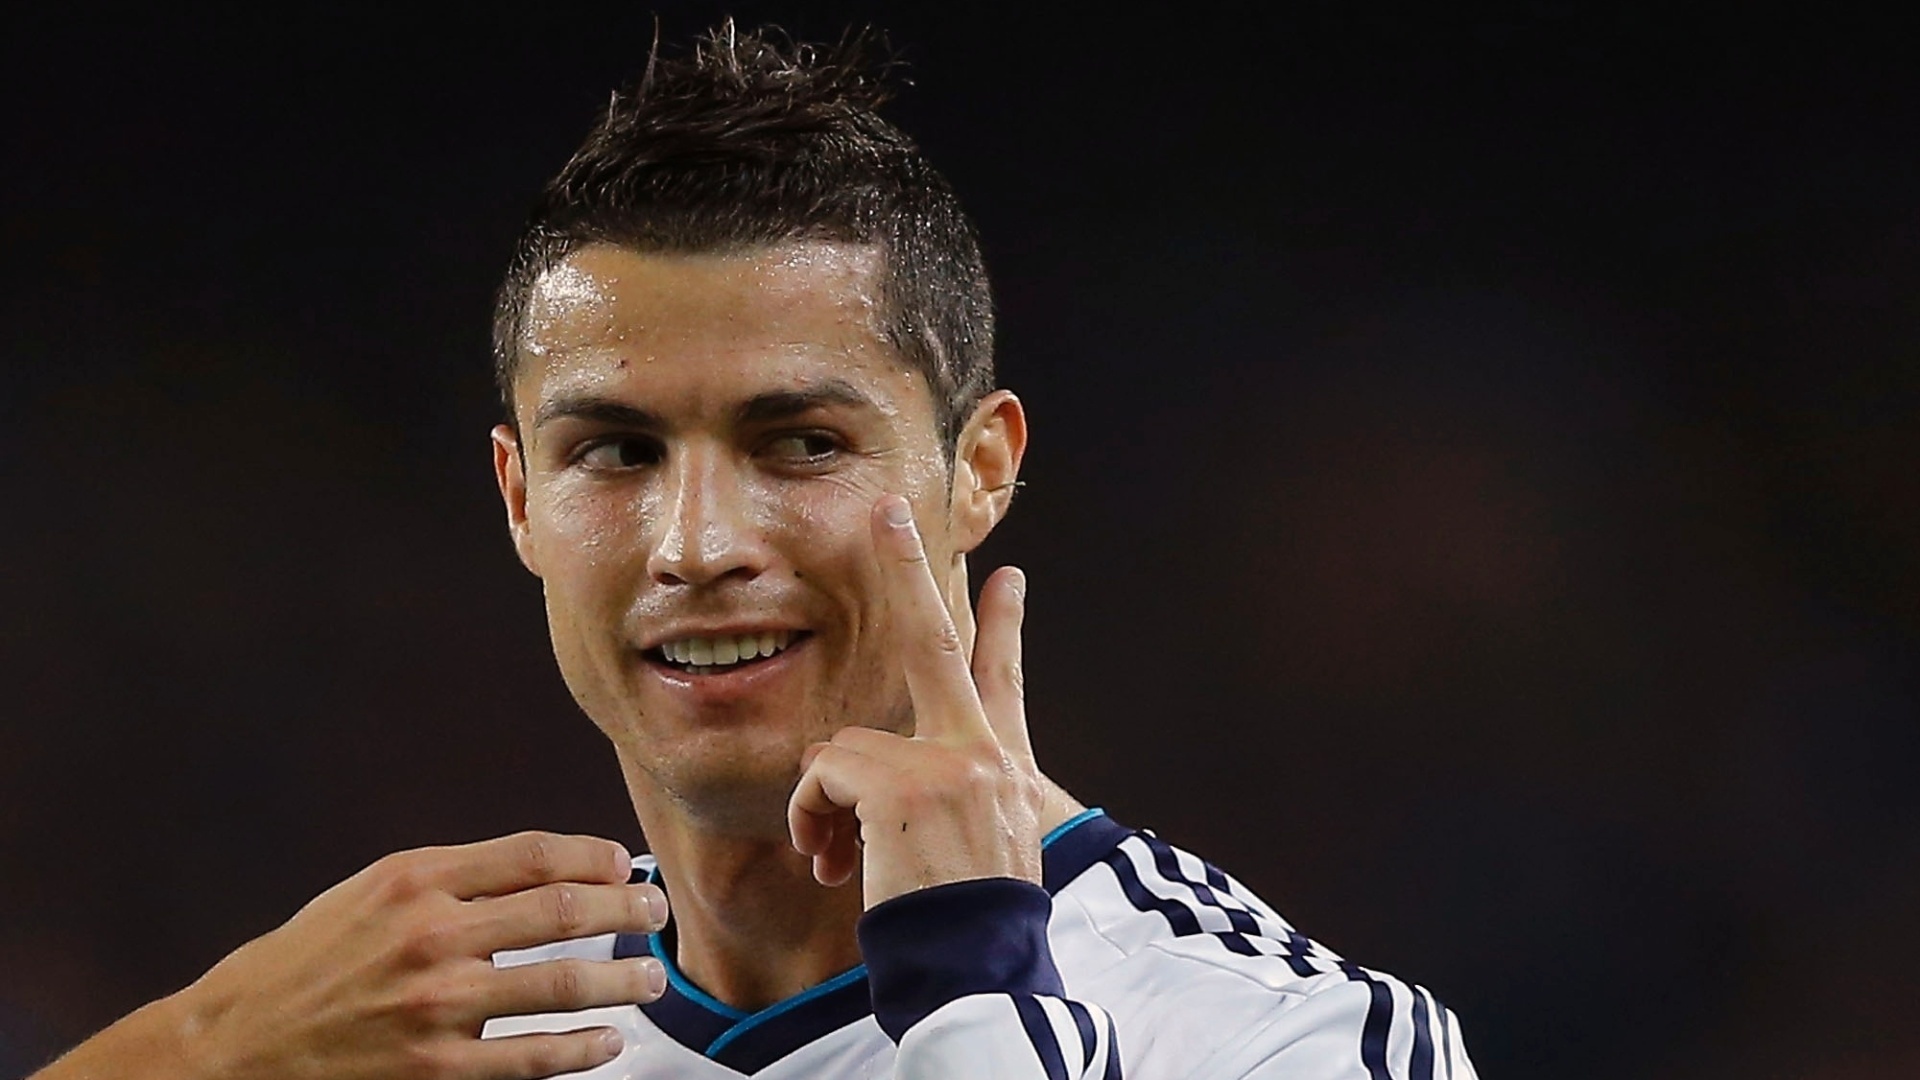 Best Cristiano Ronaldo HD Wallpaper Picture Image Photo